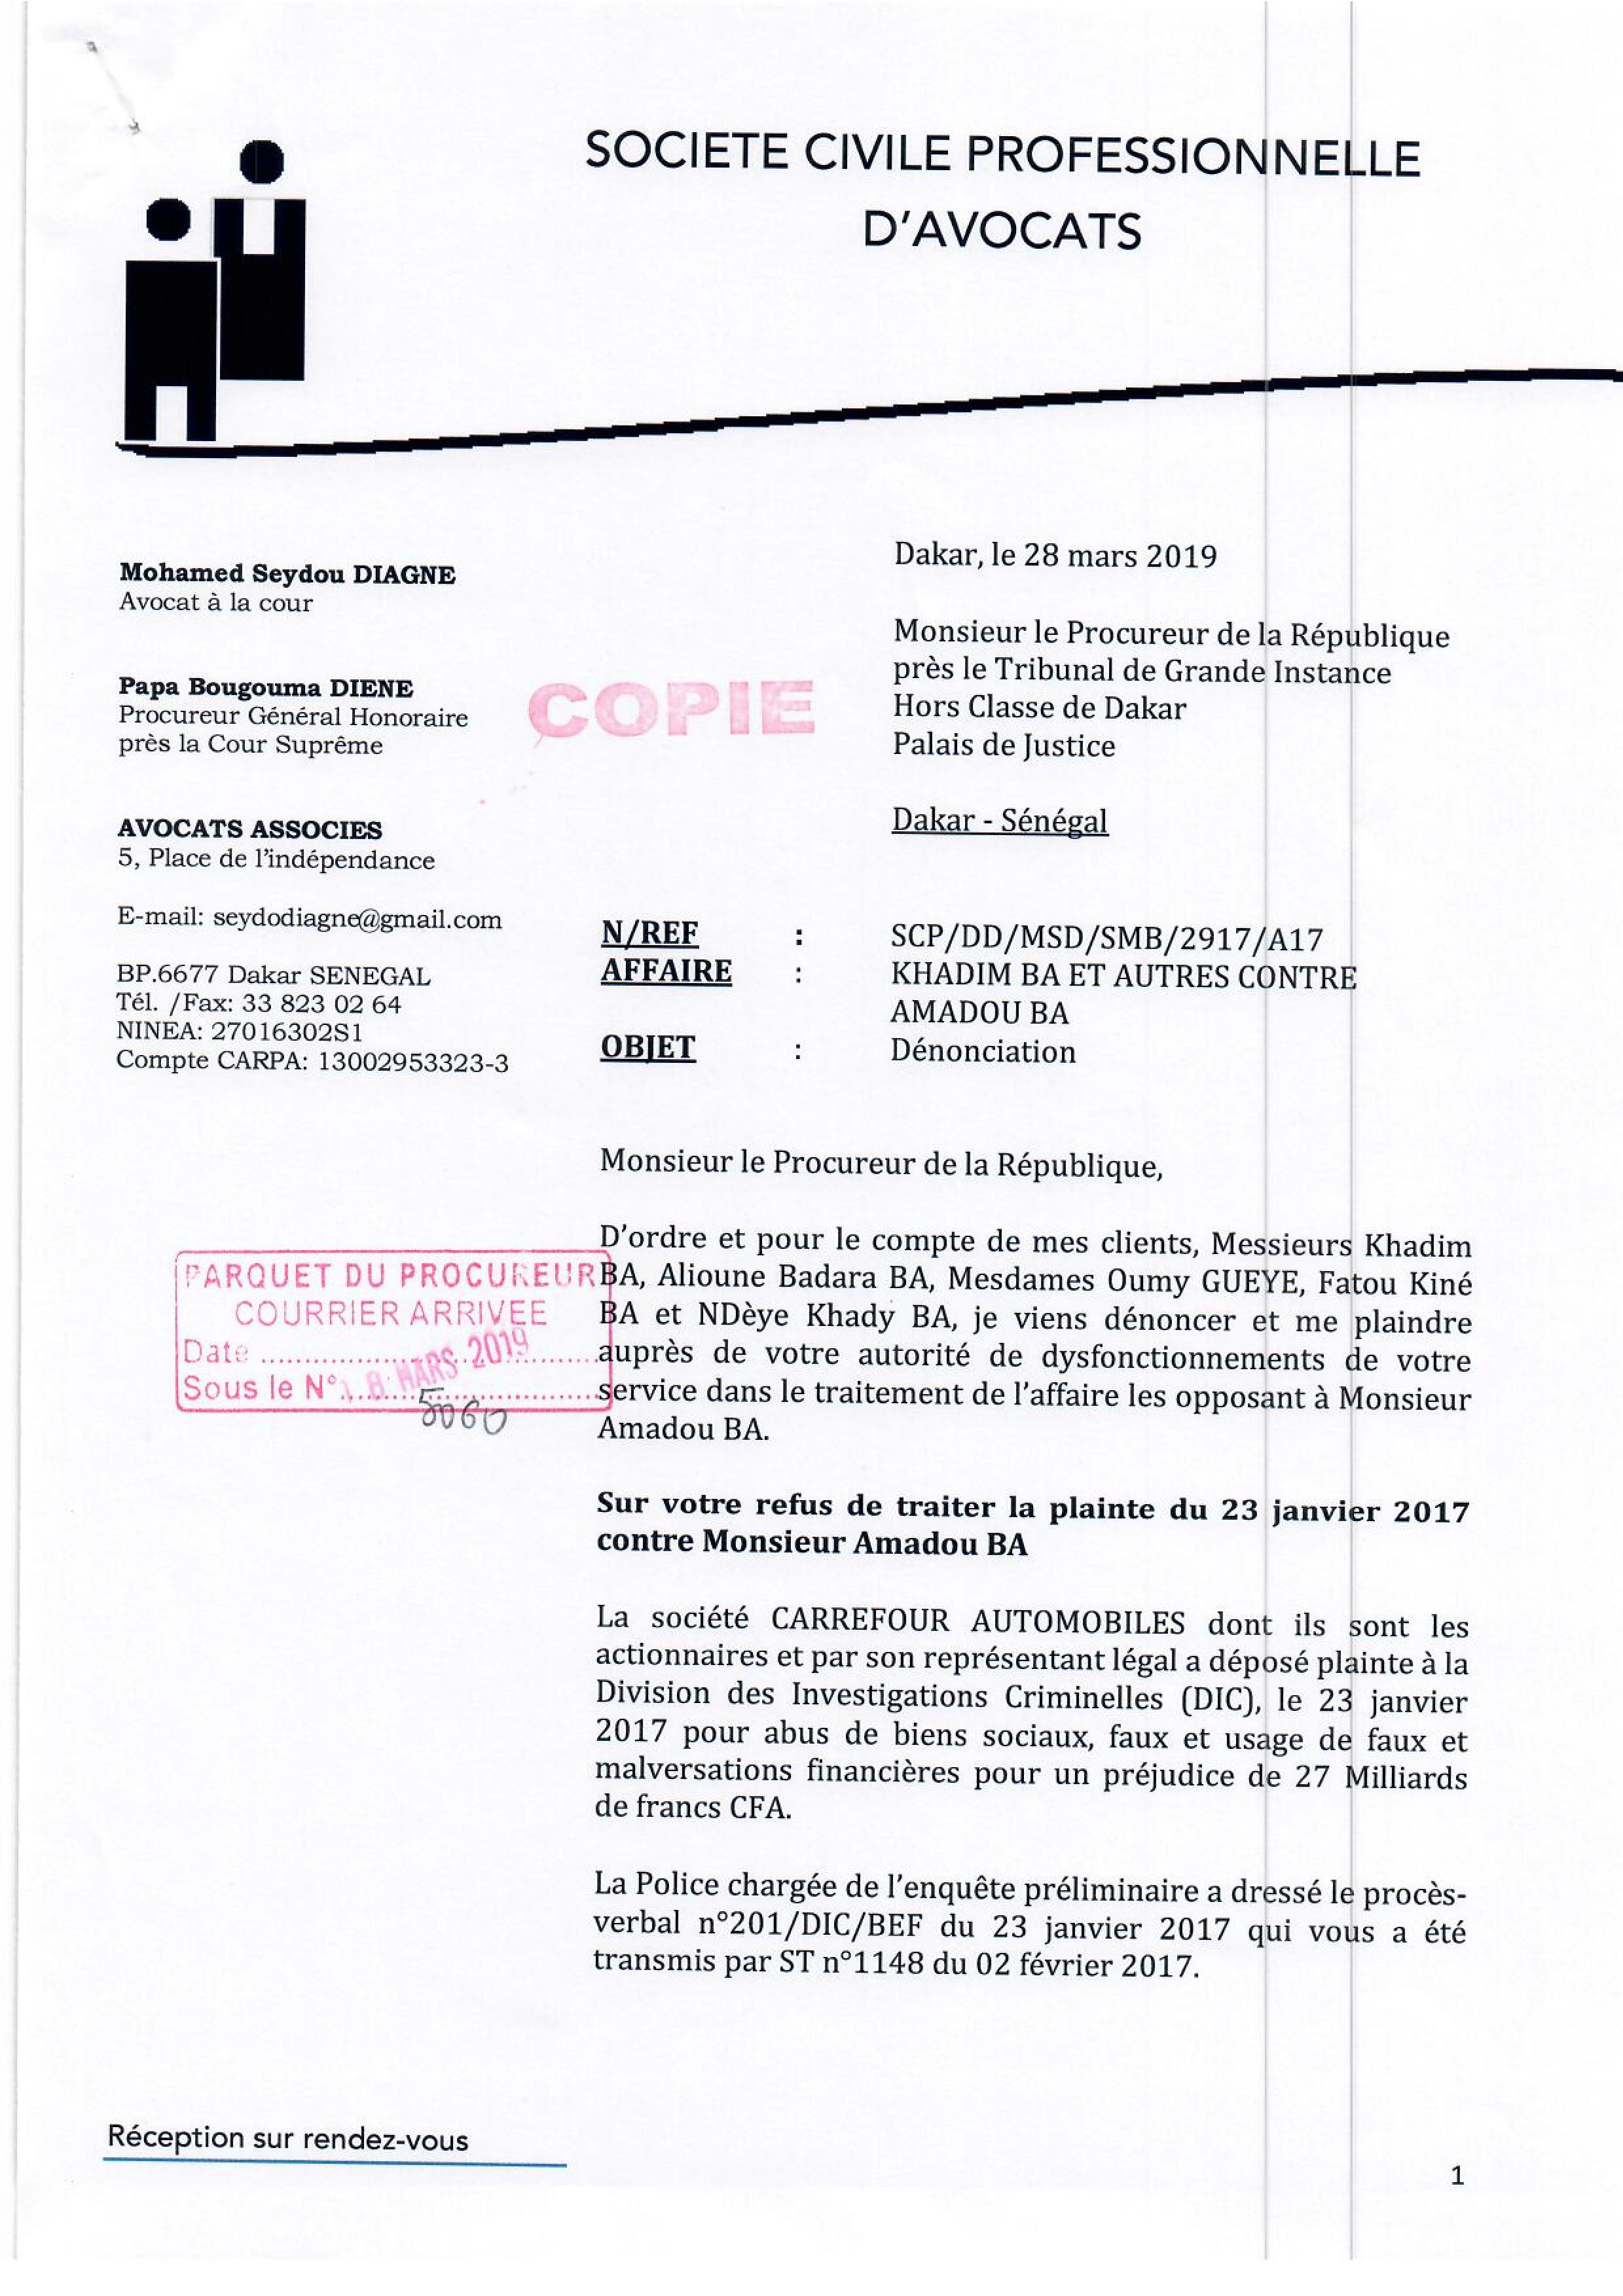 Aux origines de l’affaire Carrefour automobile : Amadou Ba accusé de malversations portant sur 27 milliards… ( Documents )